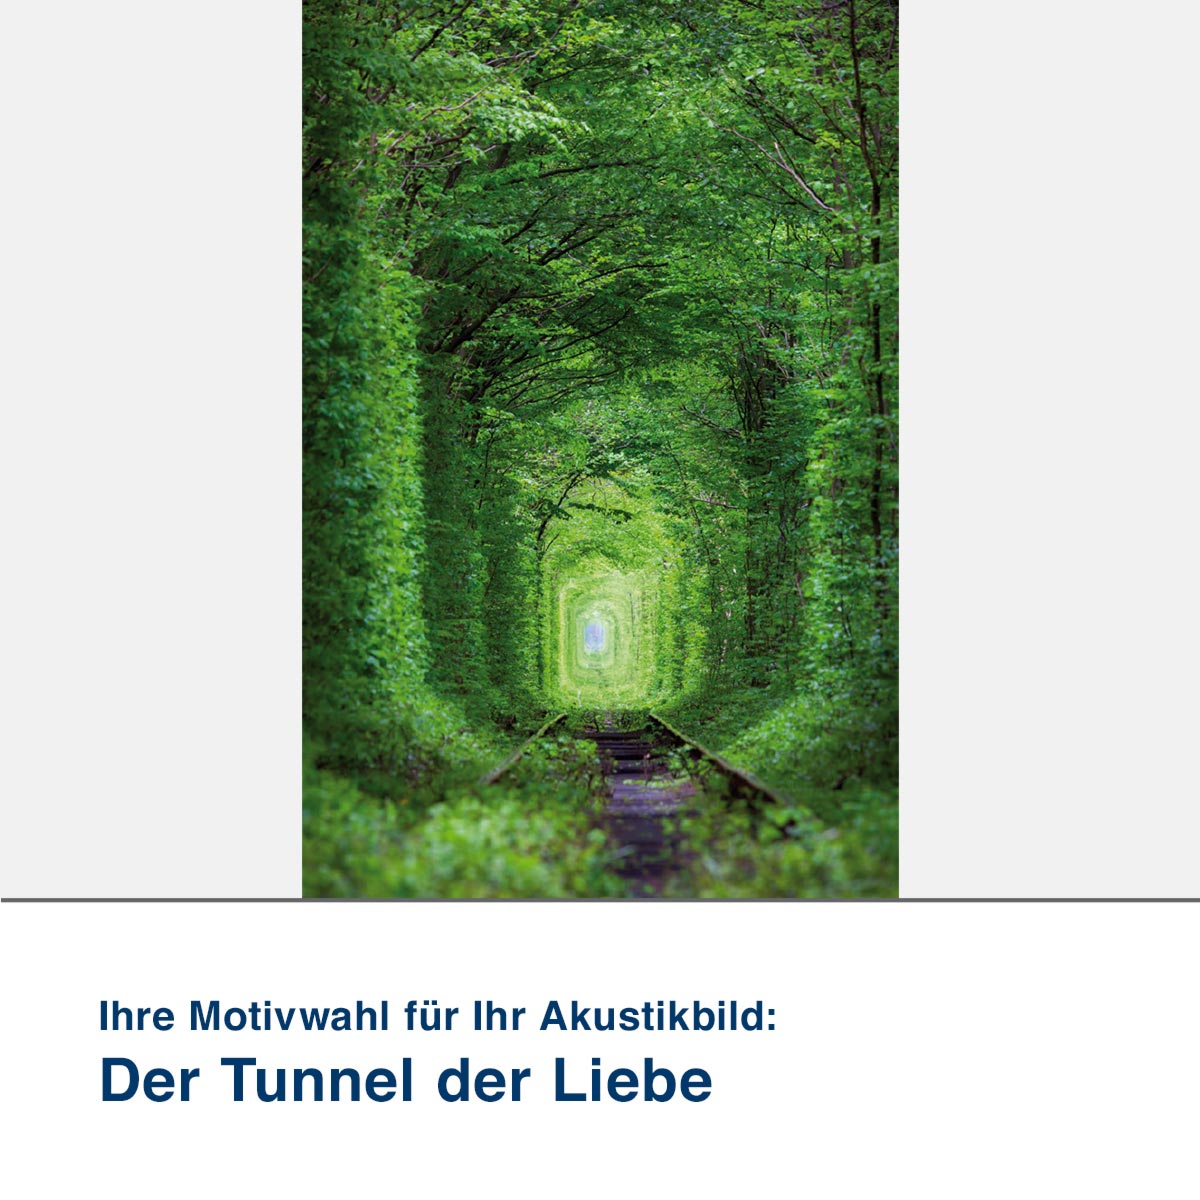 Akustikbild Motiv Der Tunnel der Liebe